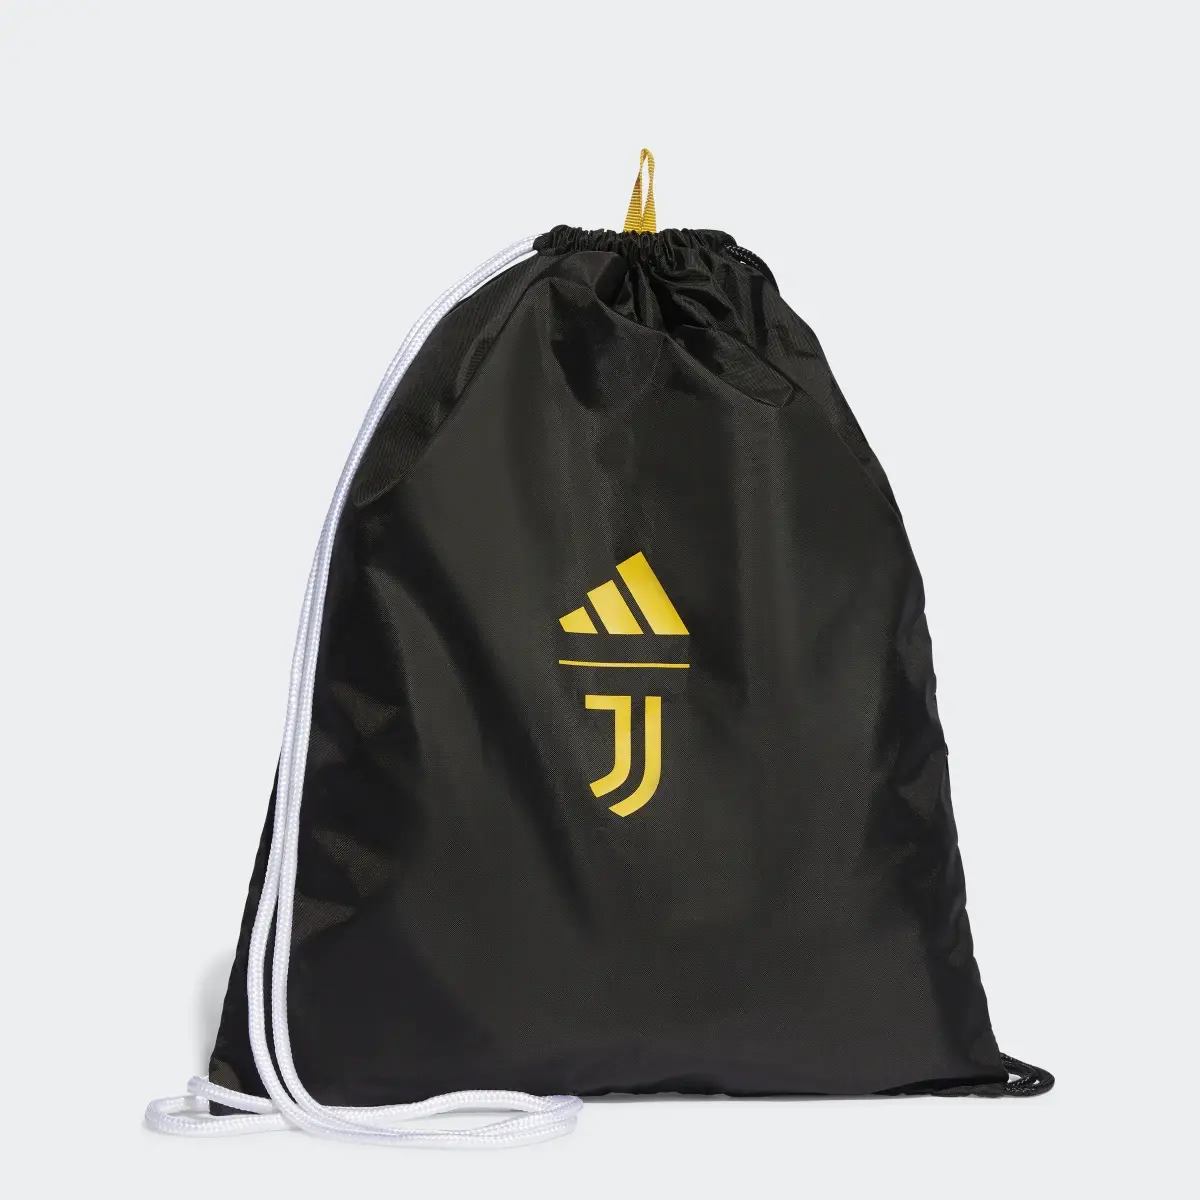 Adidas Juventus Turin Sportbeutel. 1